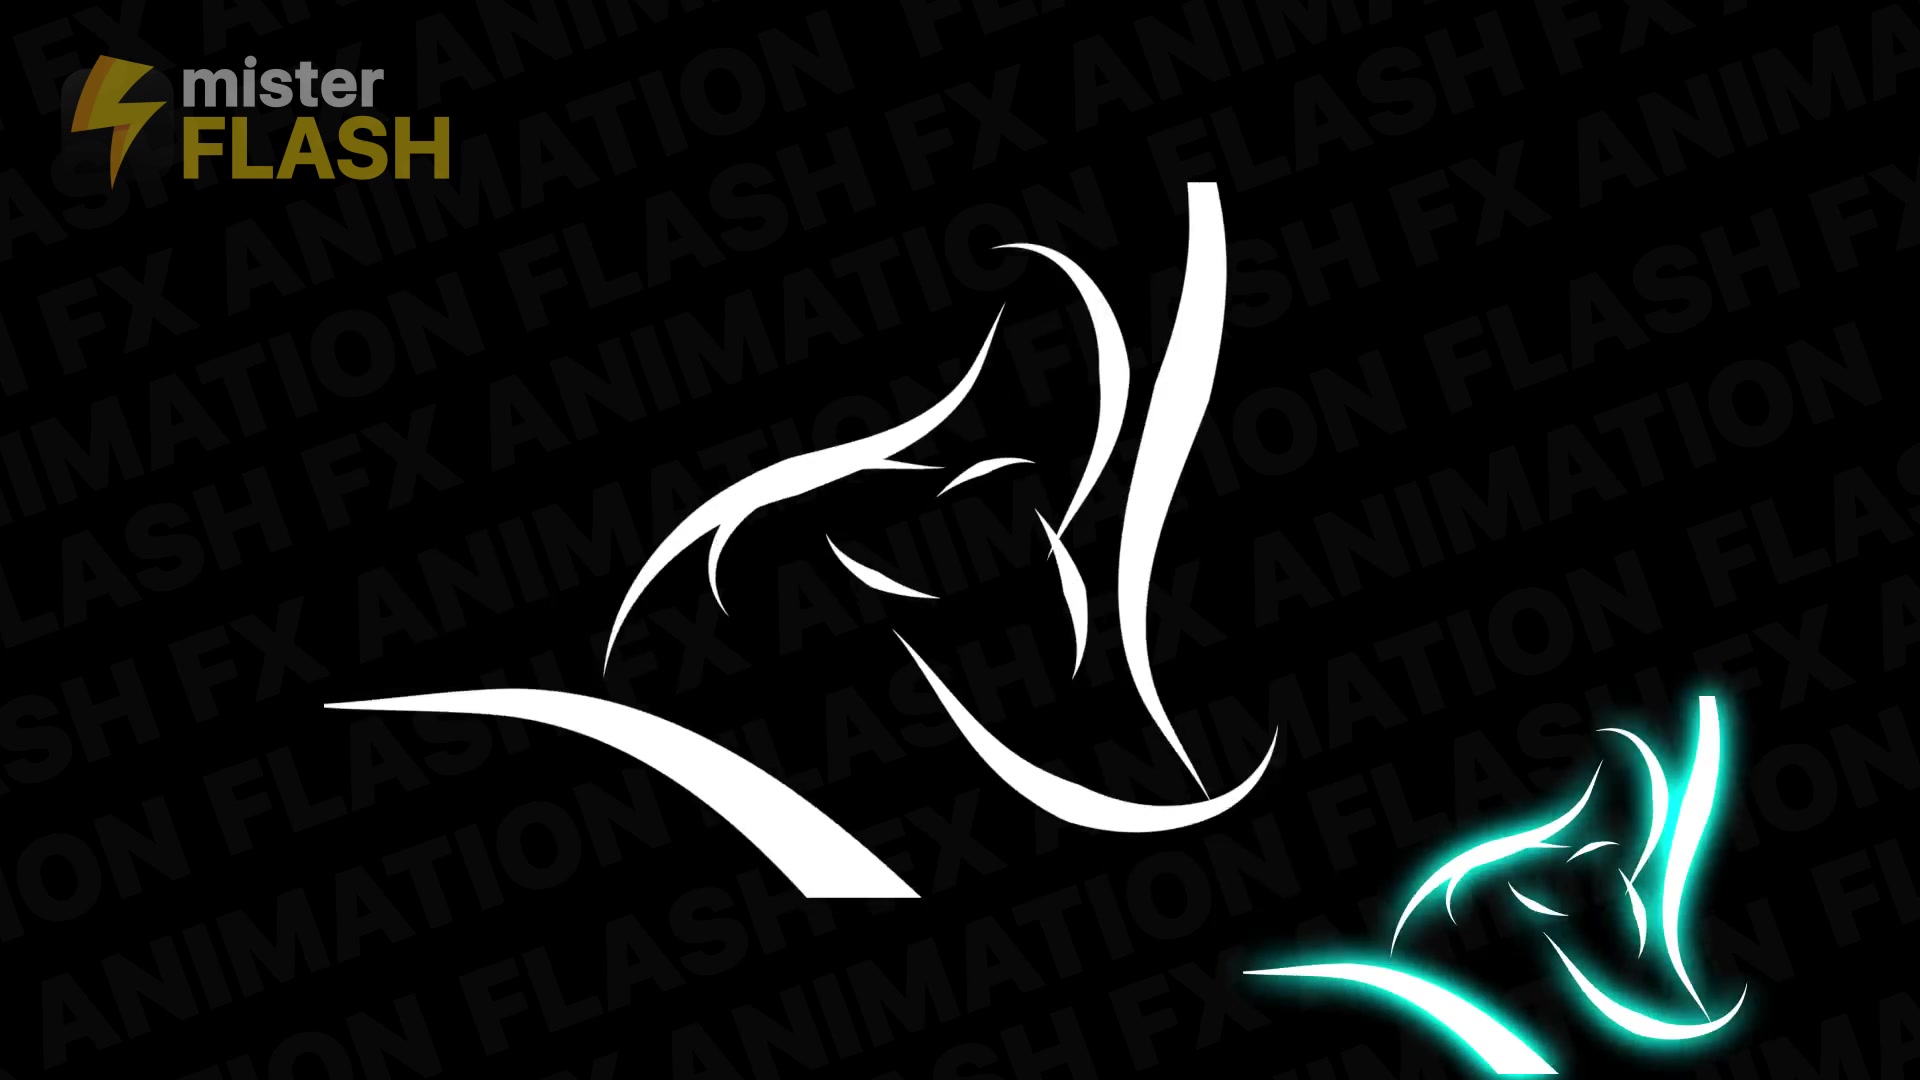 Flash FX Elements Pack 08 | Premiere Pro MOGRT Videohive 26745012 Premiere Pro Image 9